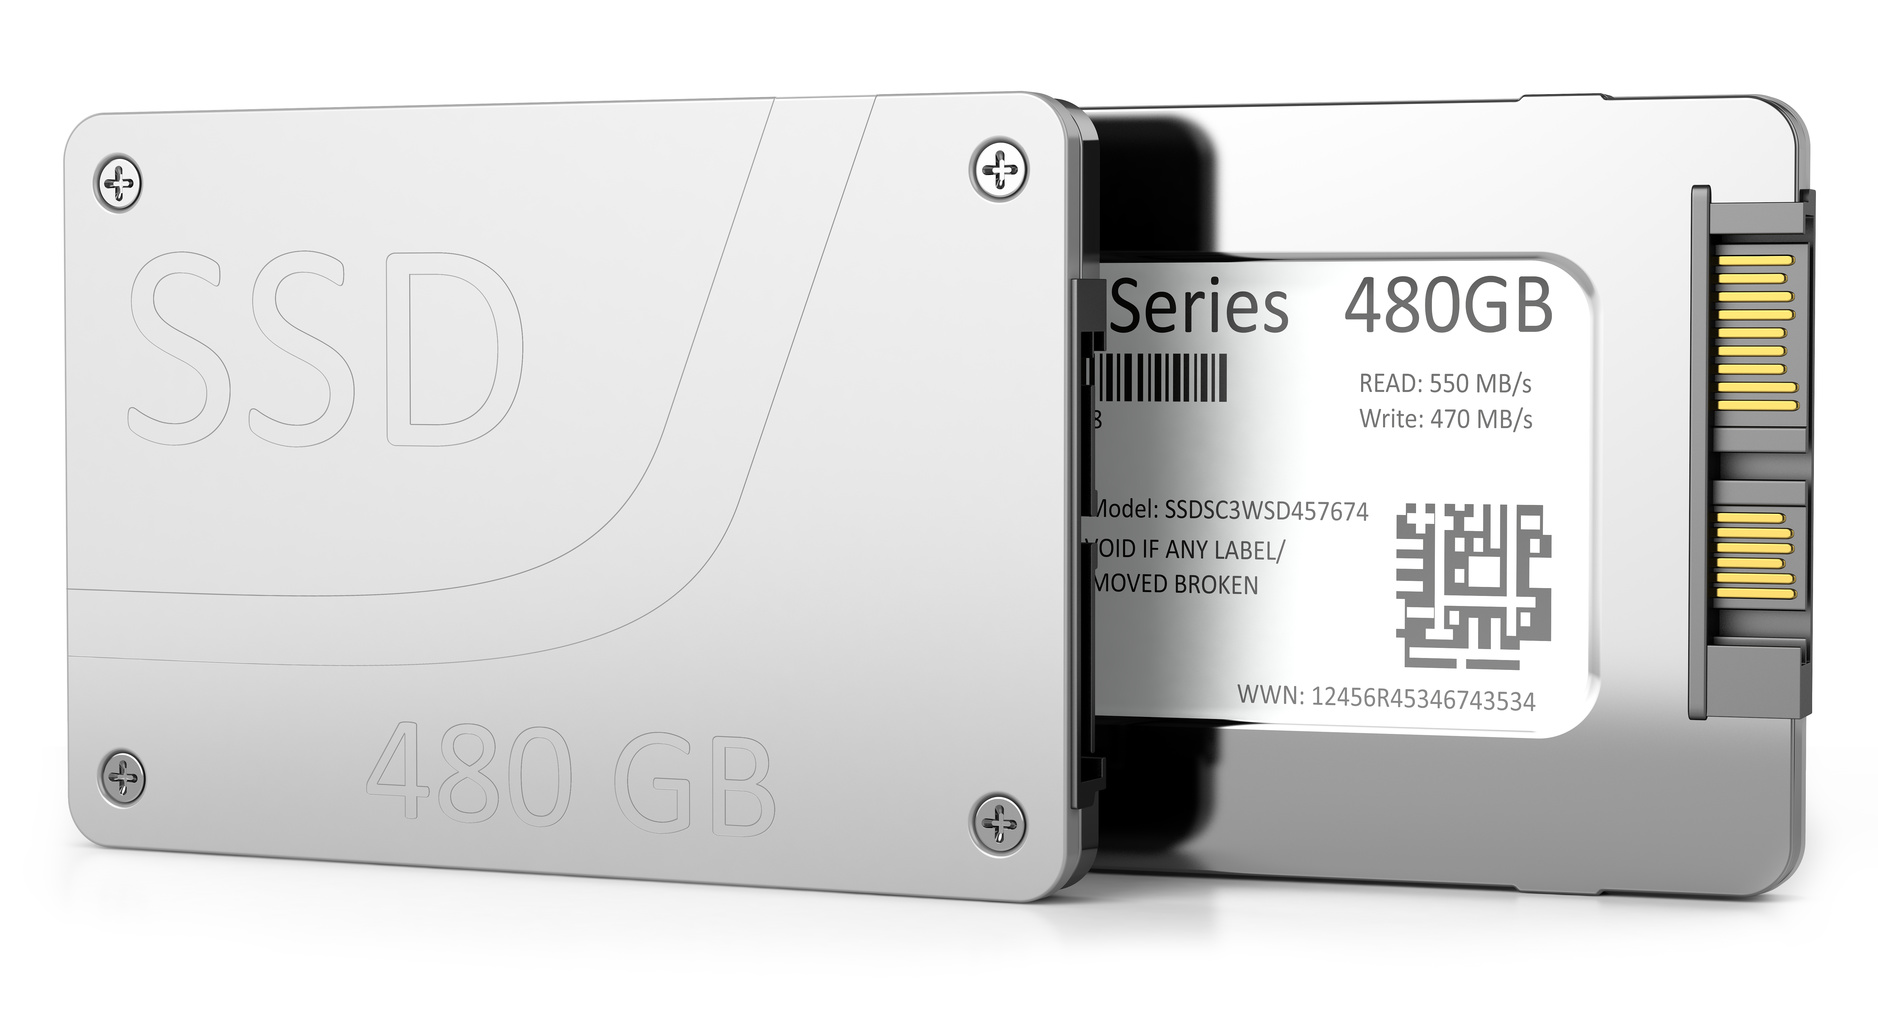 Le SSD offre des performances plus élevées qu’un disque dur tout en consommant moins d’énergie. Sa durée de vie est toutefois plus réduite. © P.S, fotolia